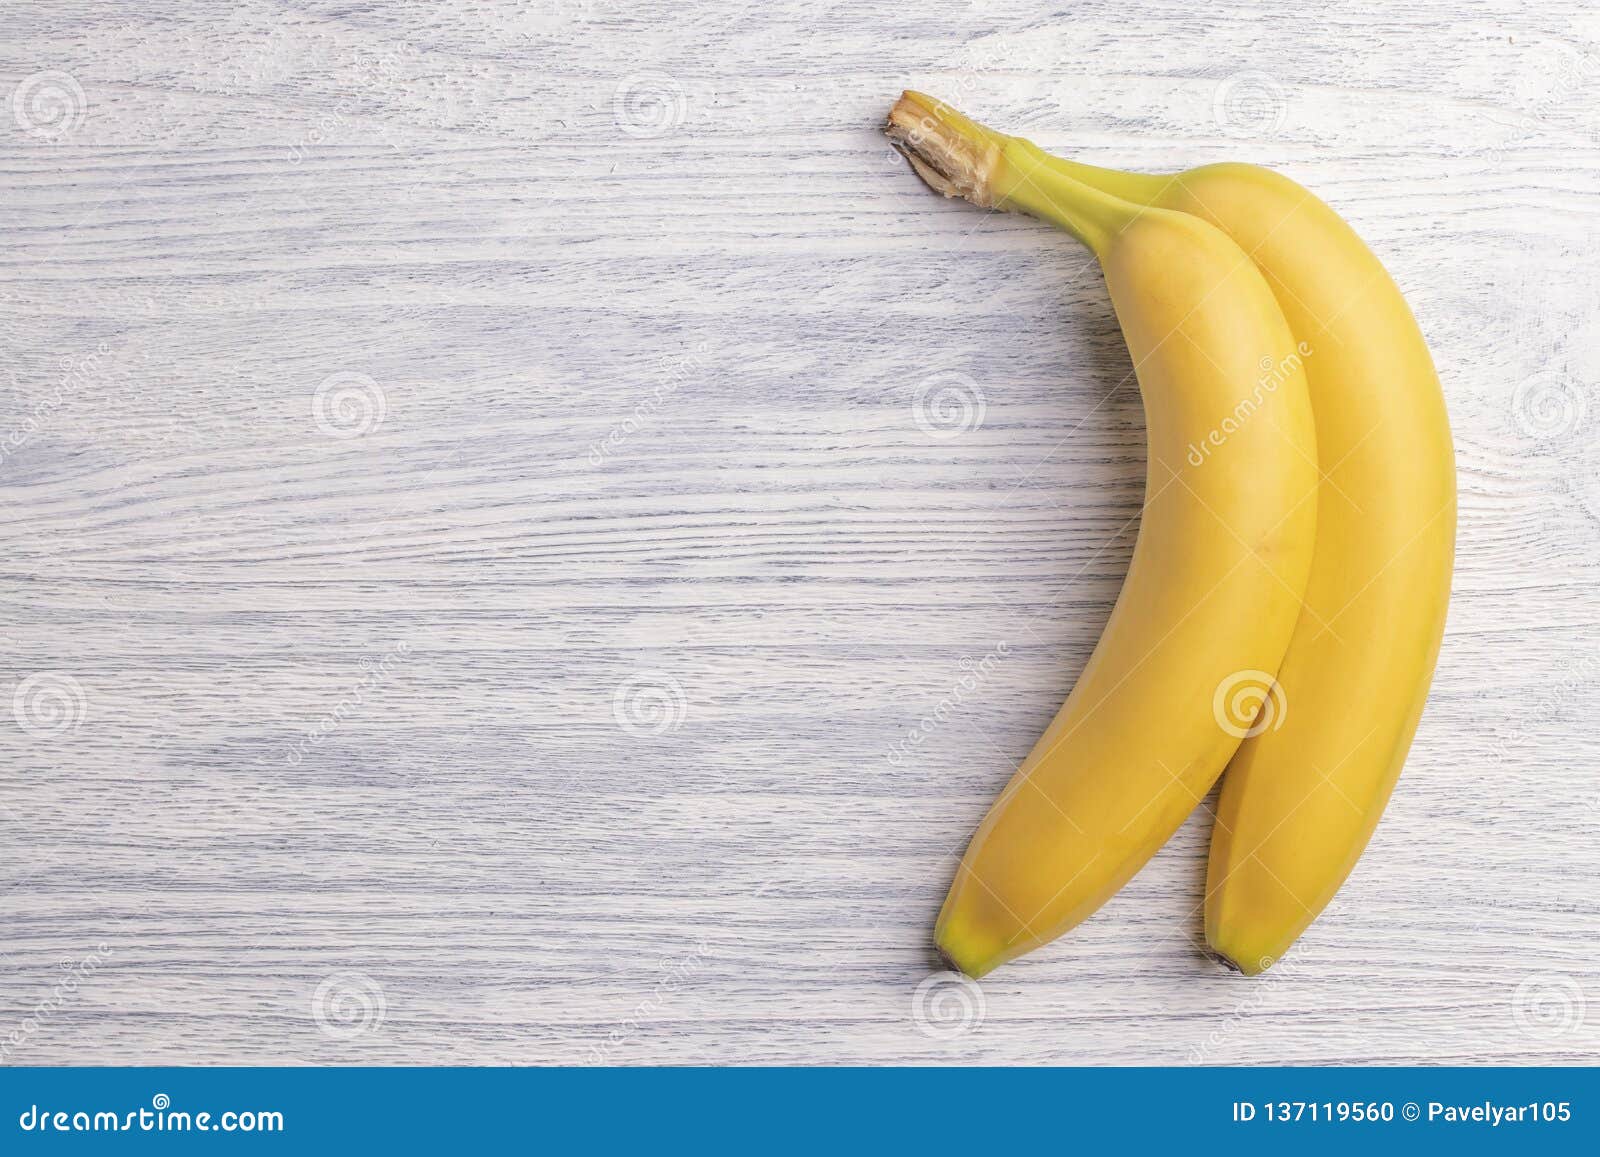 Свит банана. Банан на столе. Бананы на деревянном столе. Банан лежит на столе. Два банана на столе.